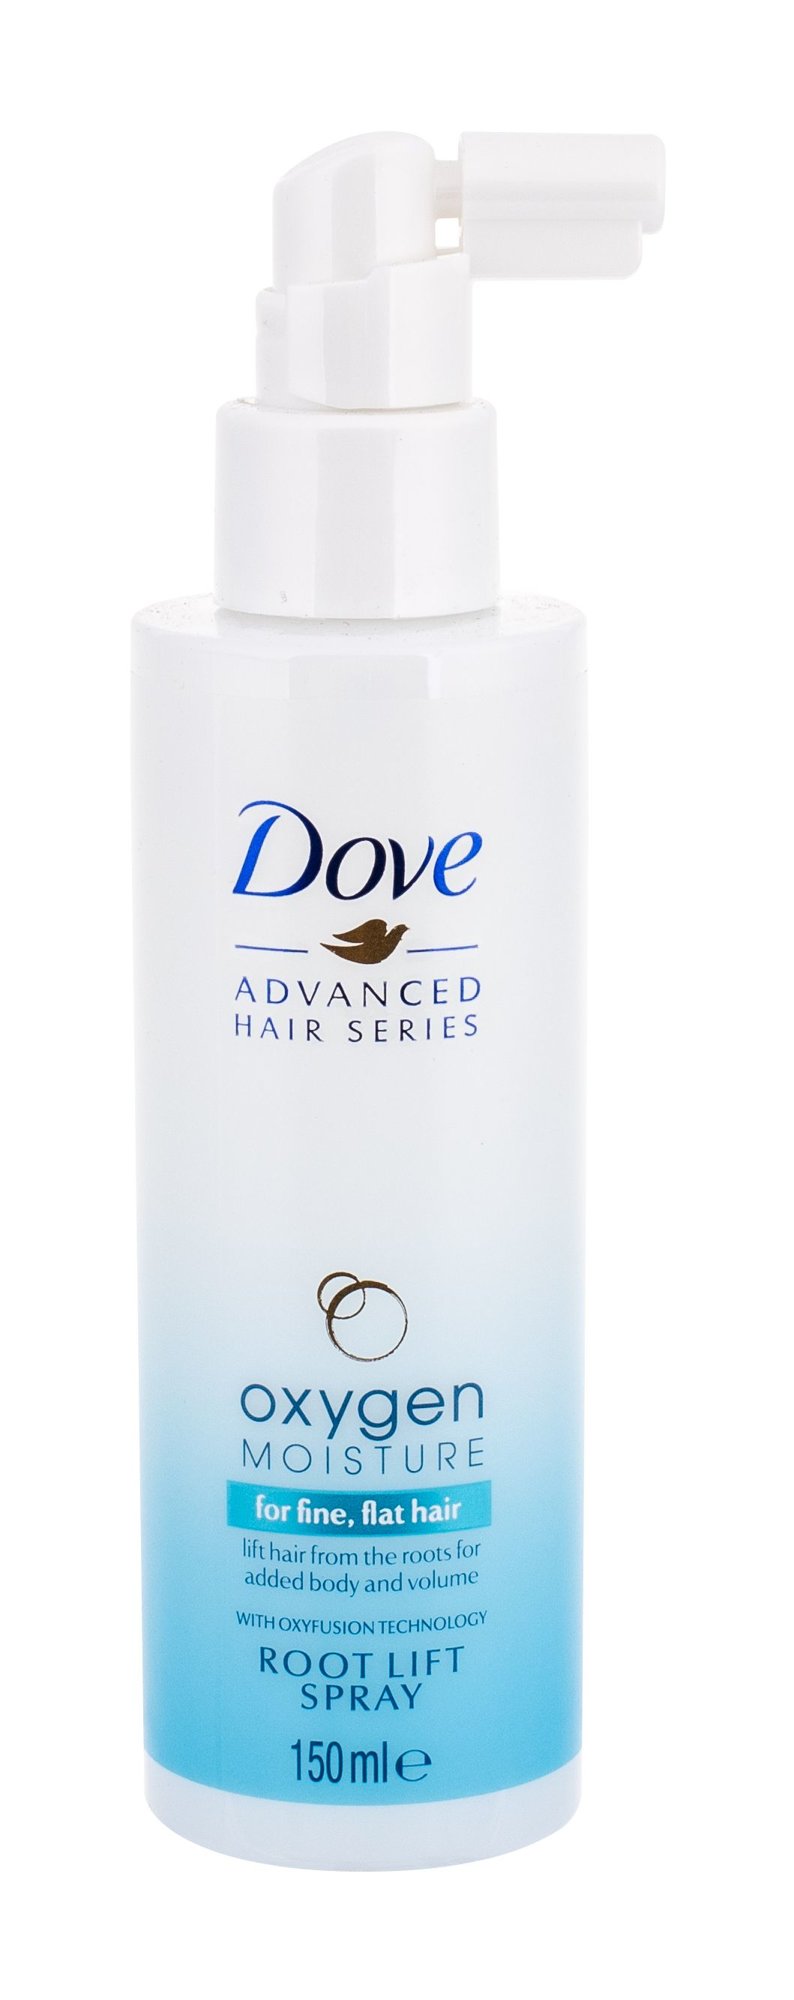 Dove Advanced Hair Series Oxygen Moisture 150ml priemonė plaukų apimčiai